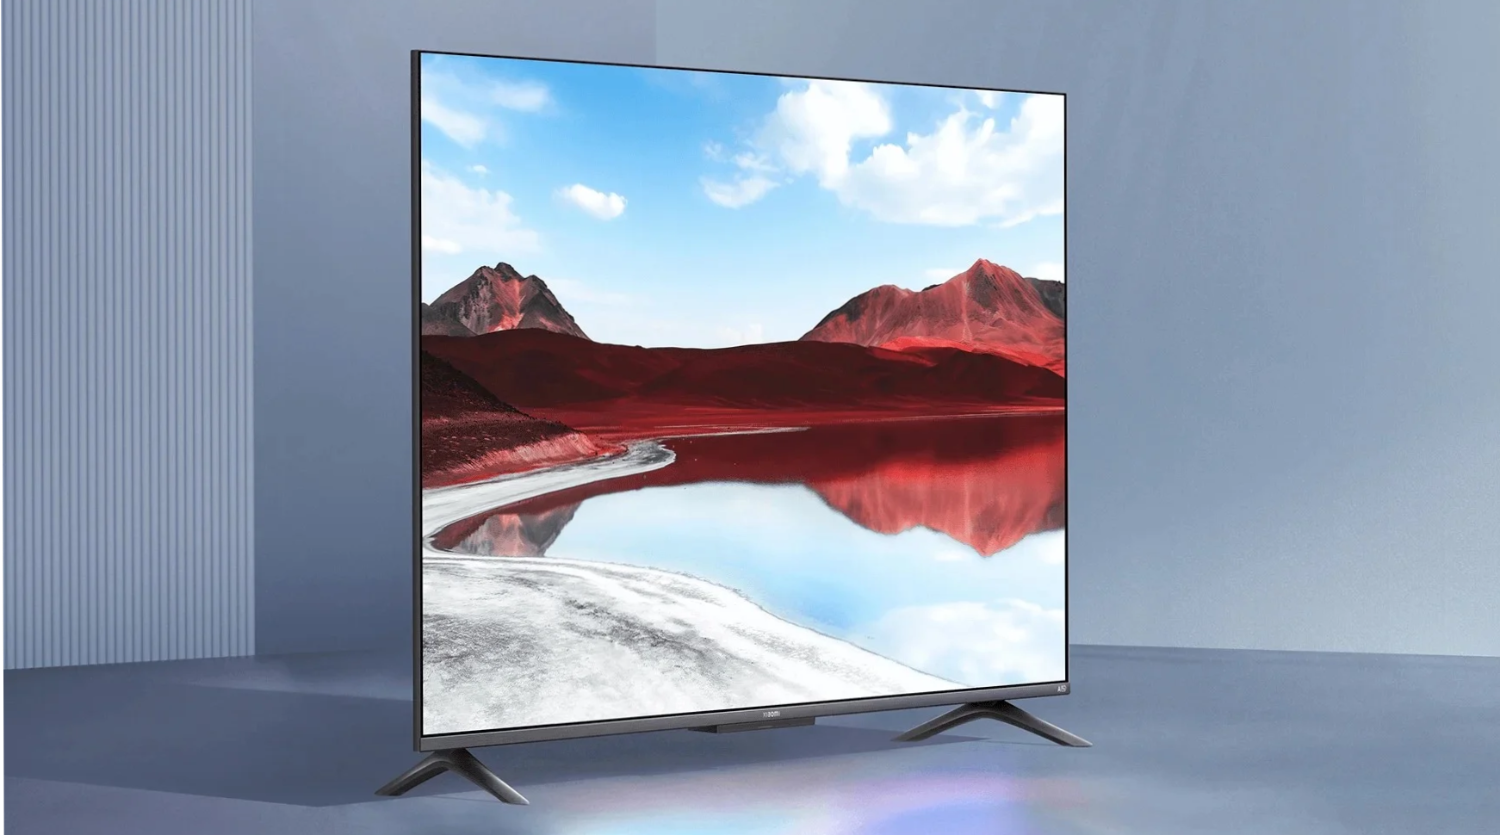 Xiaomi начала продавать за пределами Китая недорогие 4K QLED-телевизоры по цене от 299